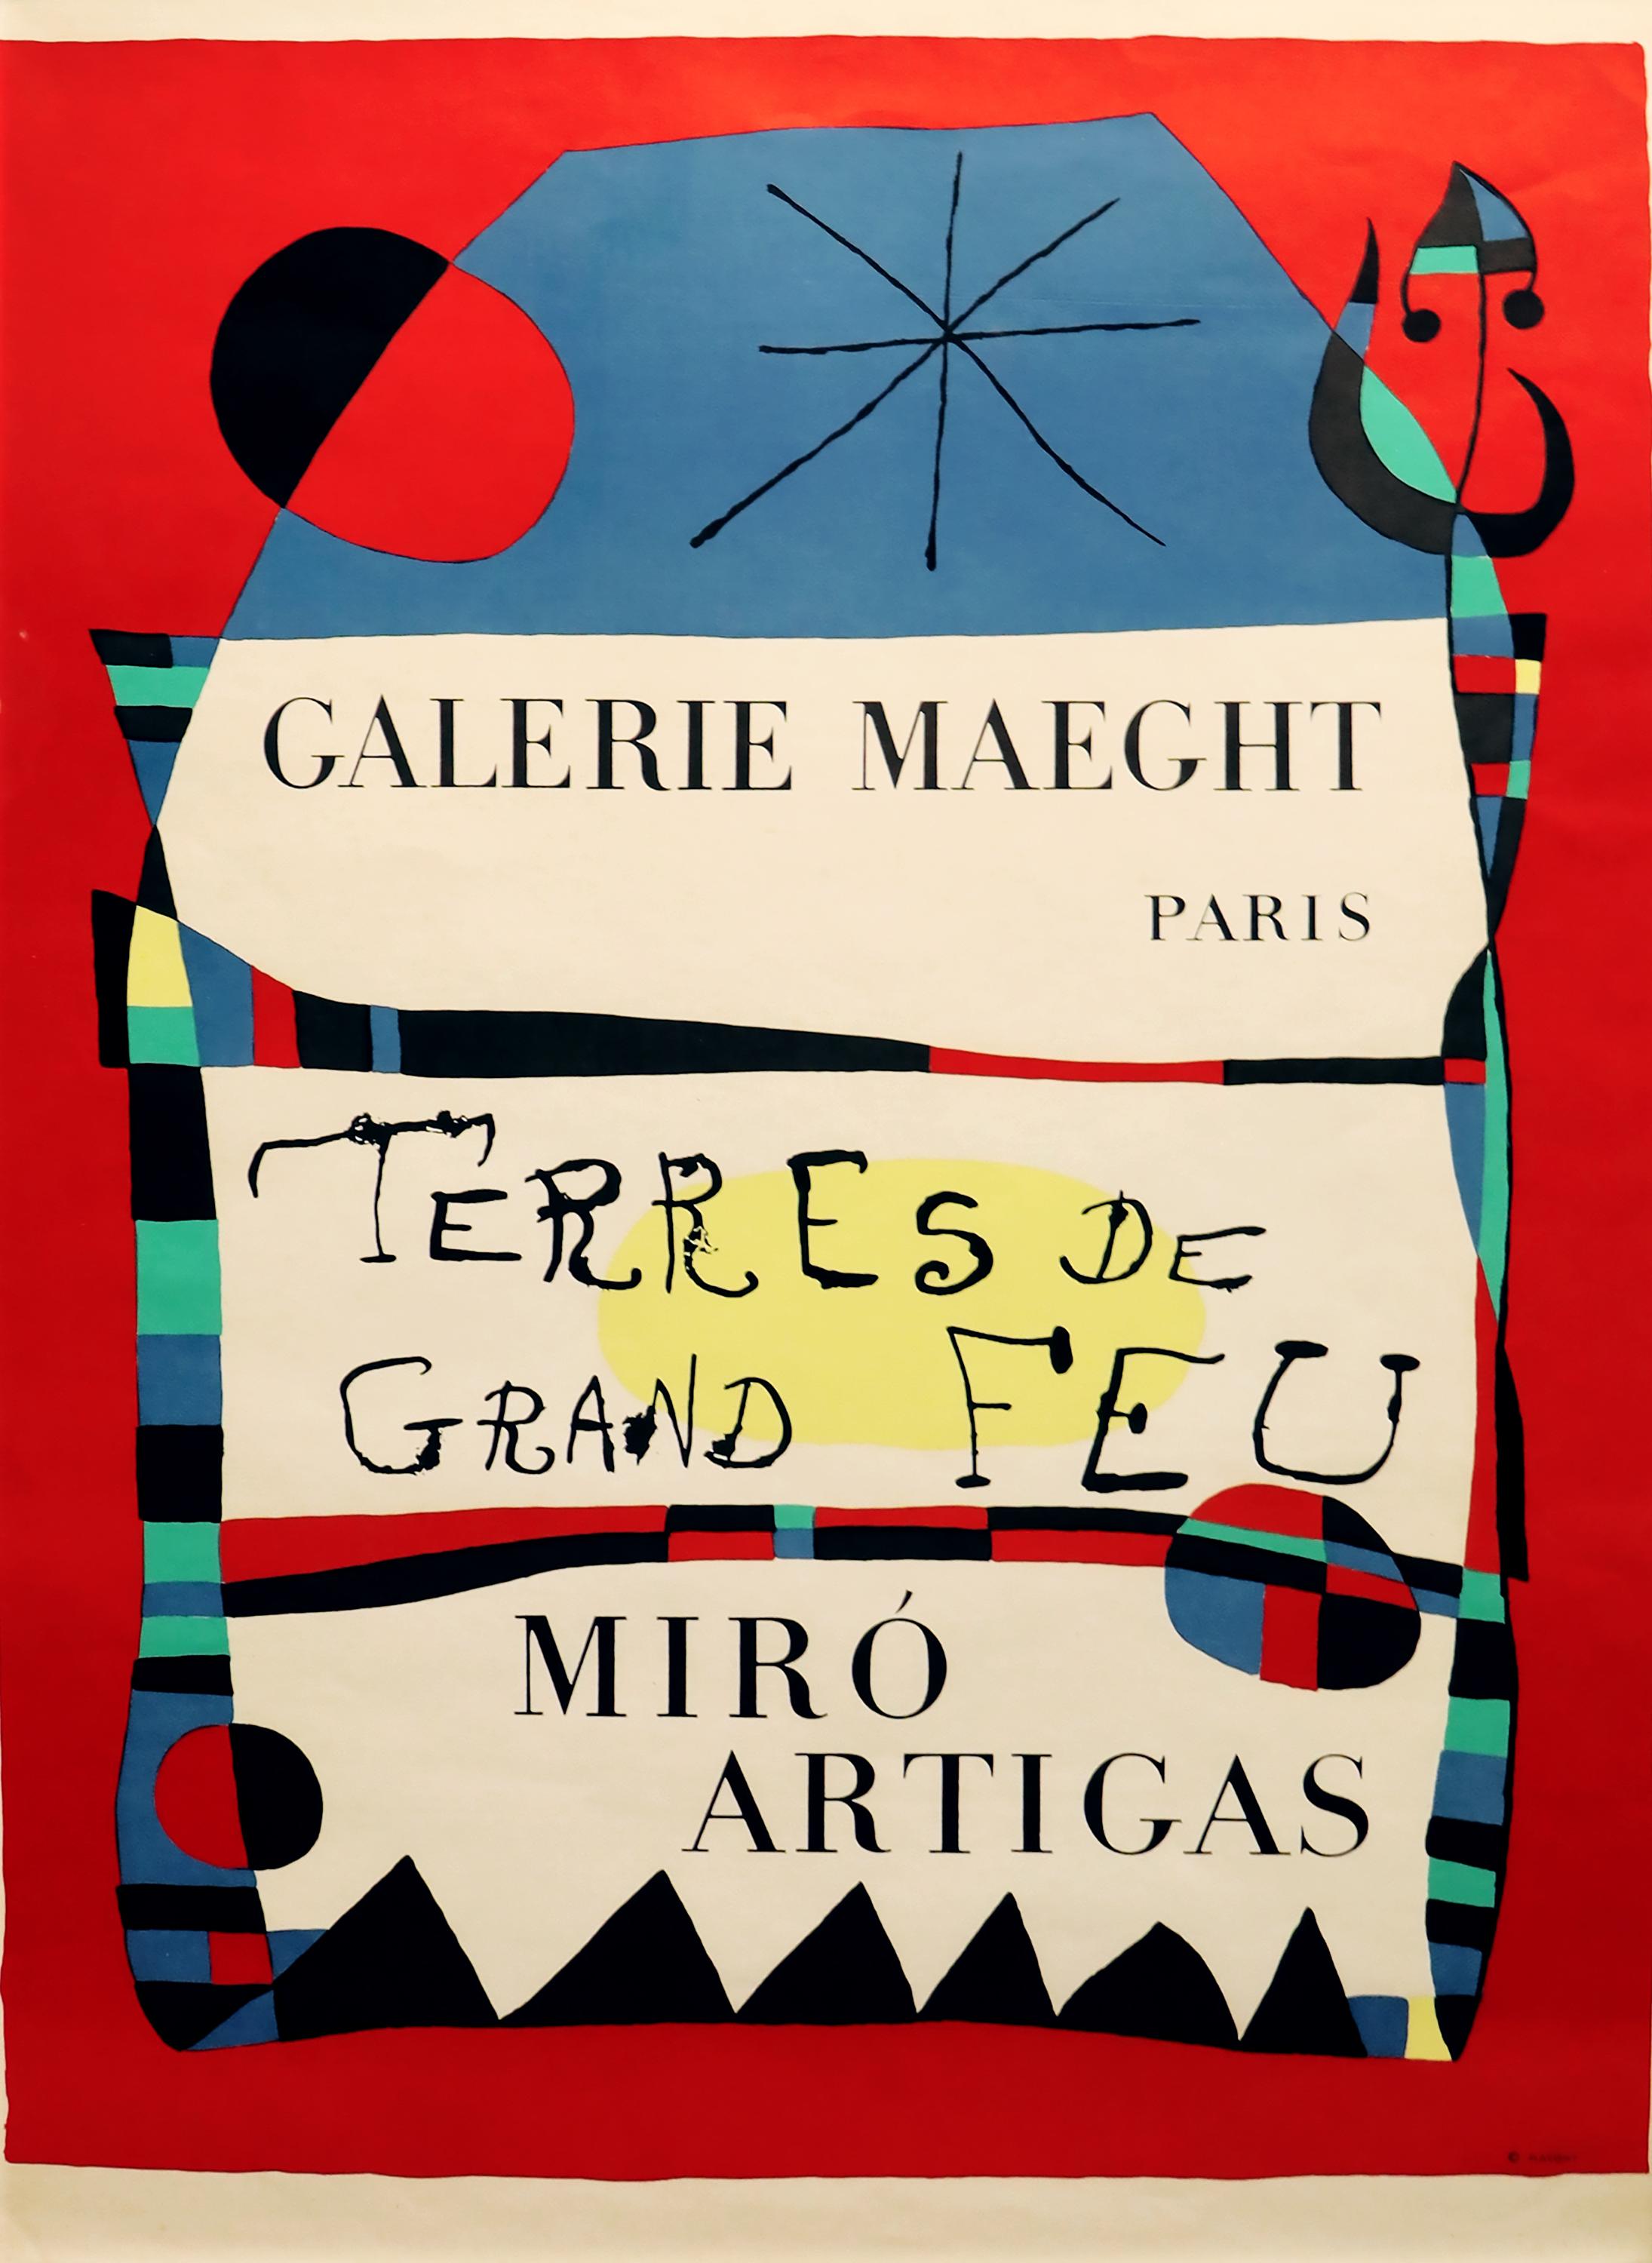 (after) Joan Miró Abstract Print – Tere de Grand Feu